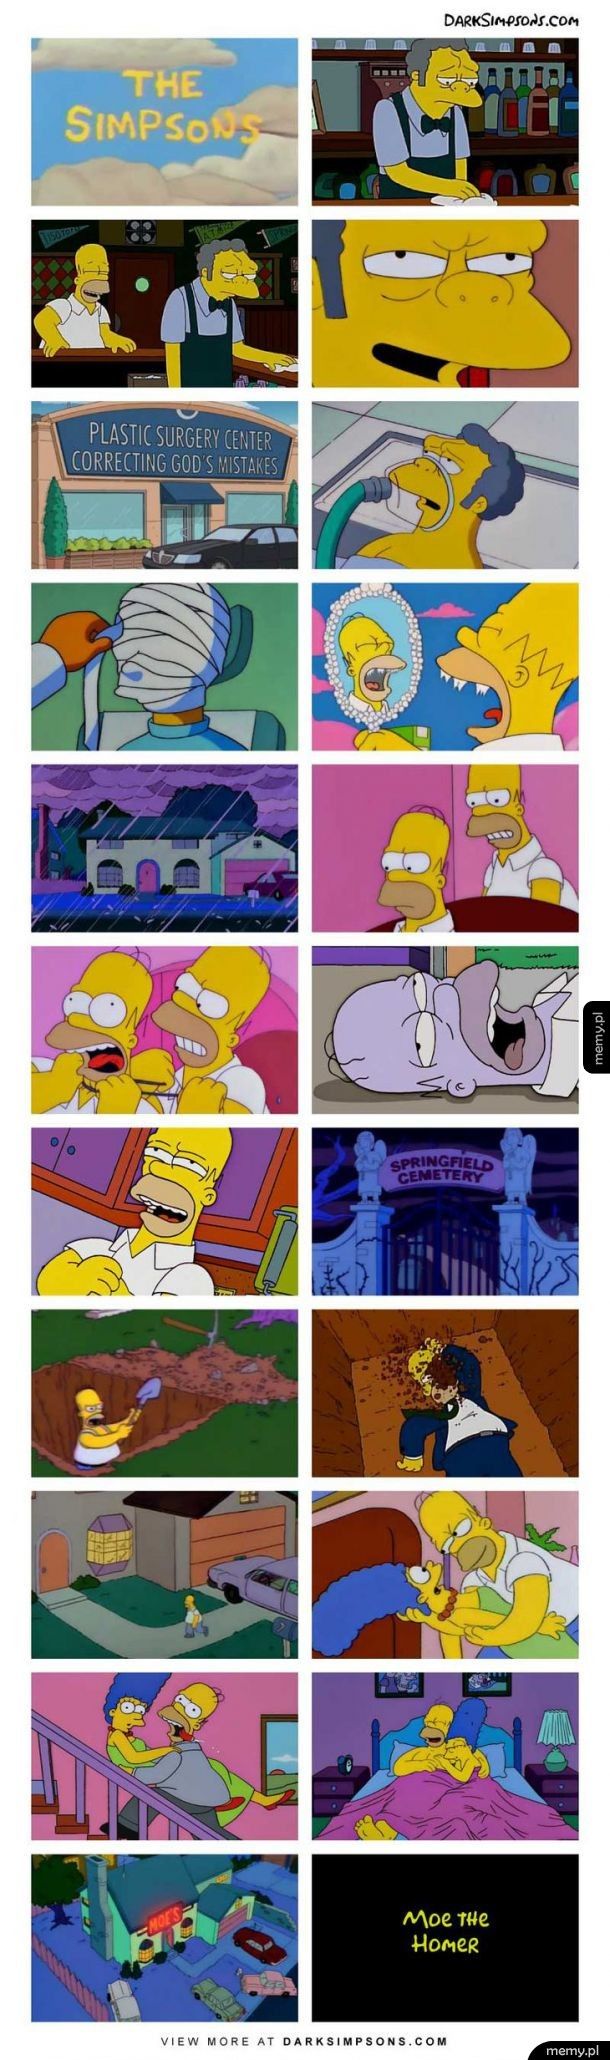 Gdyby Moe został Homerem